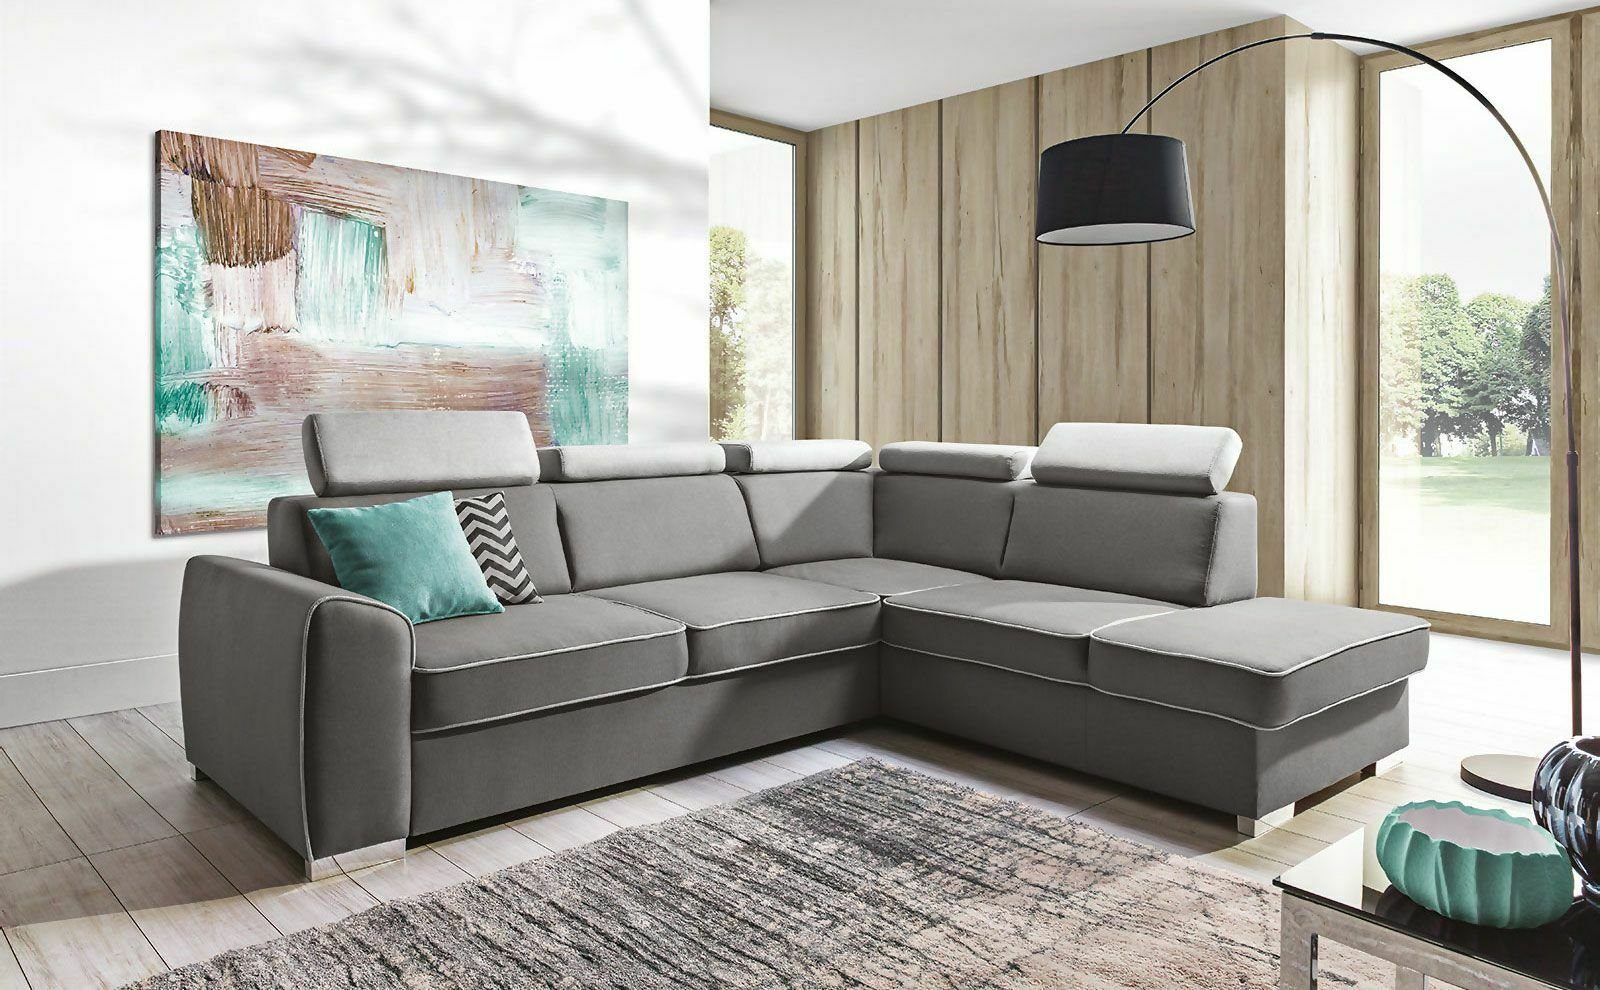 JVmoebel Ecksofa Luxus Graues Ecksofa Bettfunktion Couch Polster Möbel Sitzecke, Made in Europe